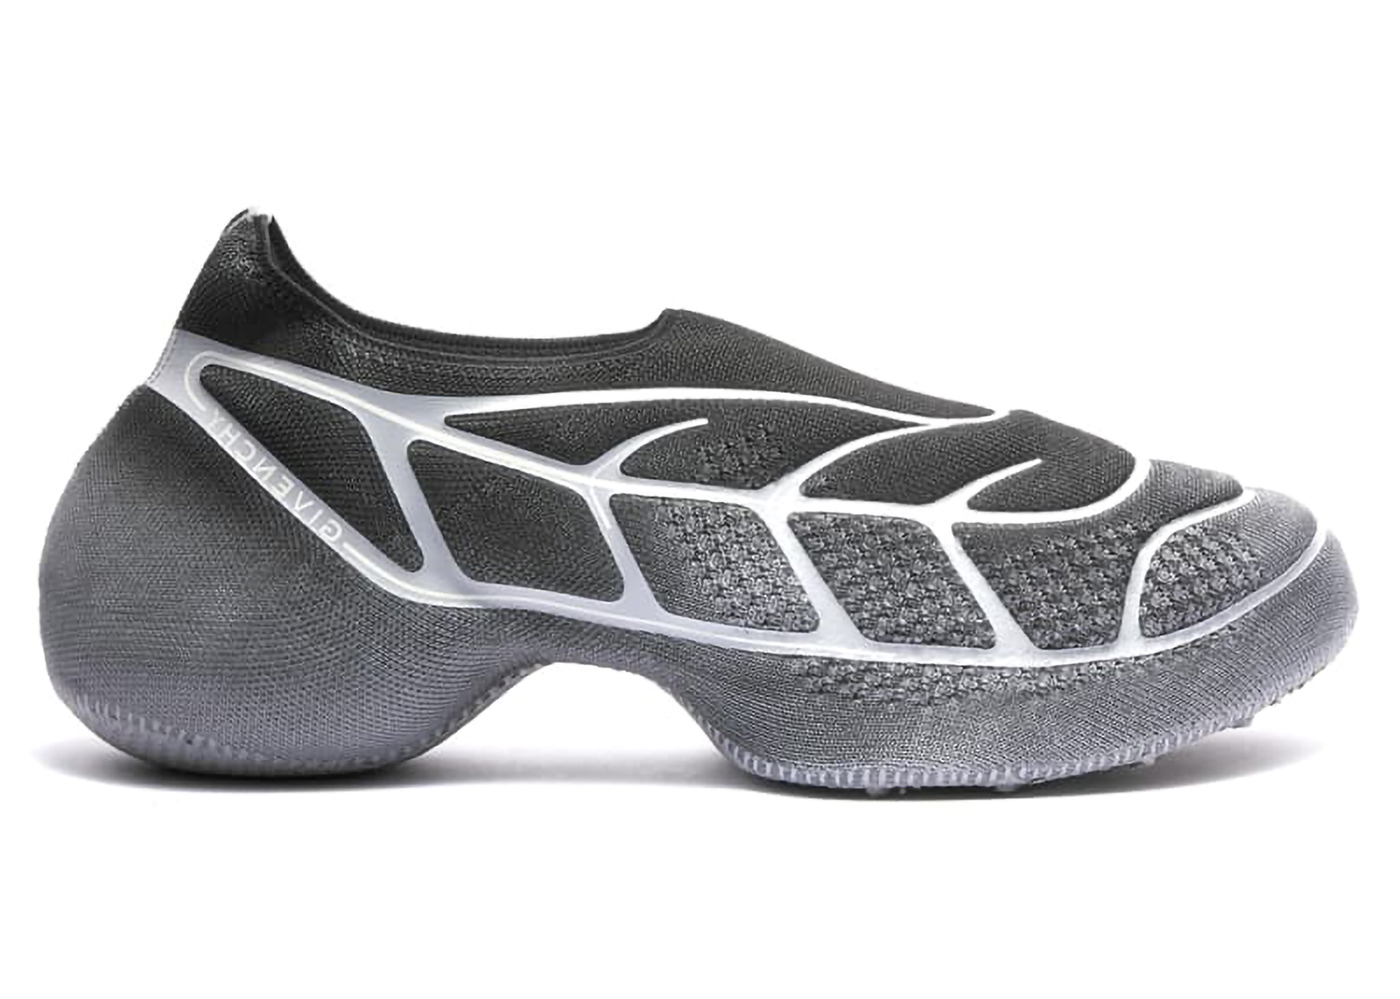 Givenchy TK-360 Plus Sneaker Black Grey Men's - BH0076H1E4-002 - US